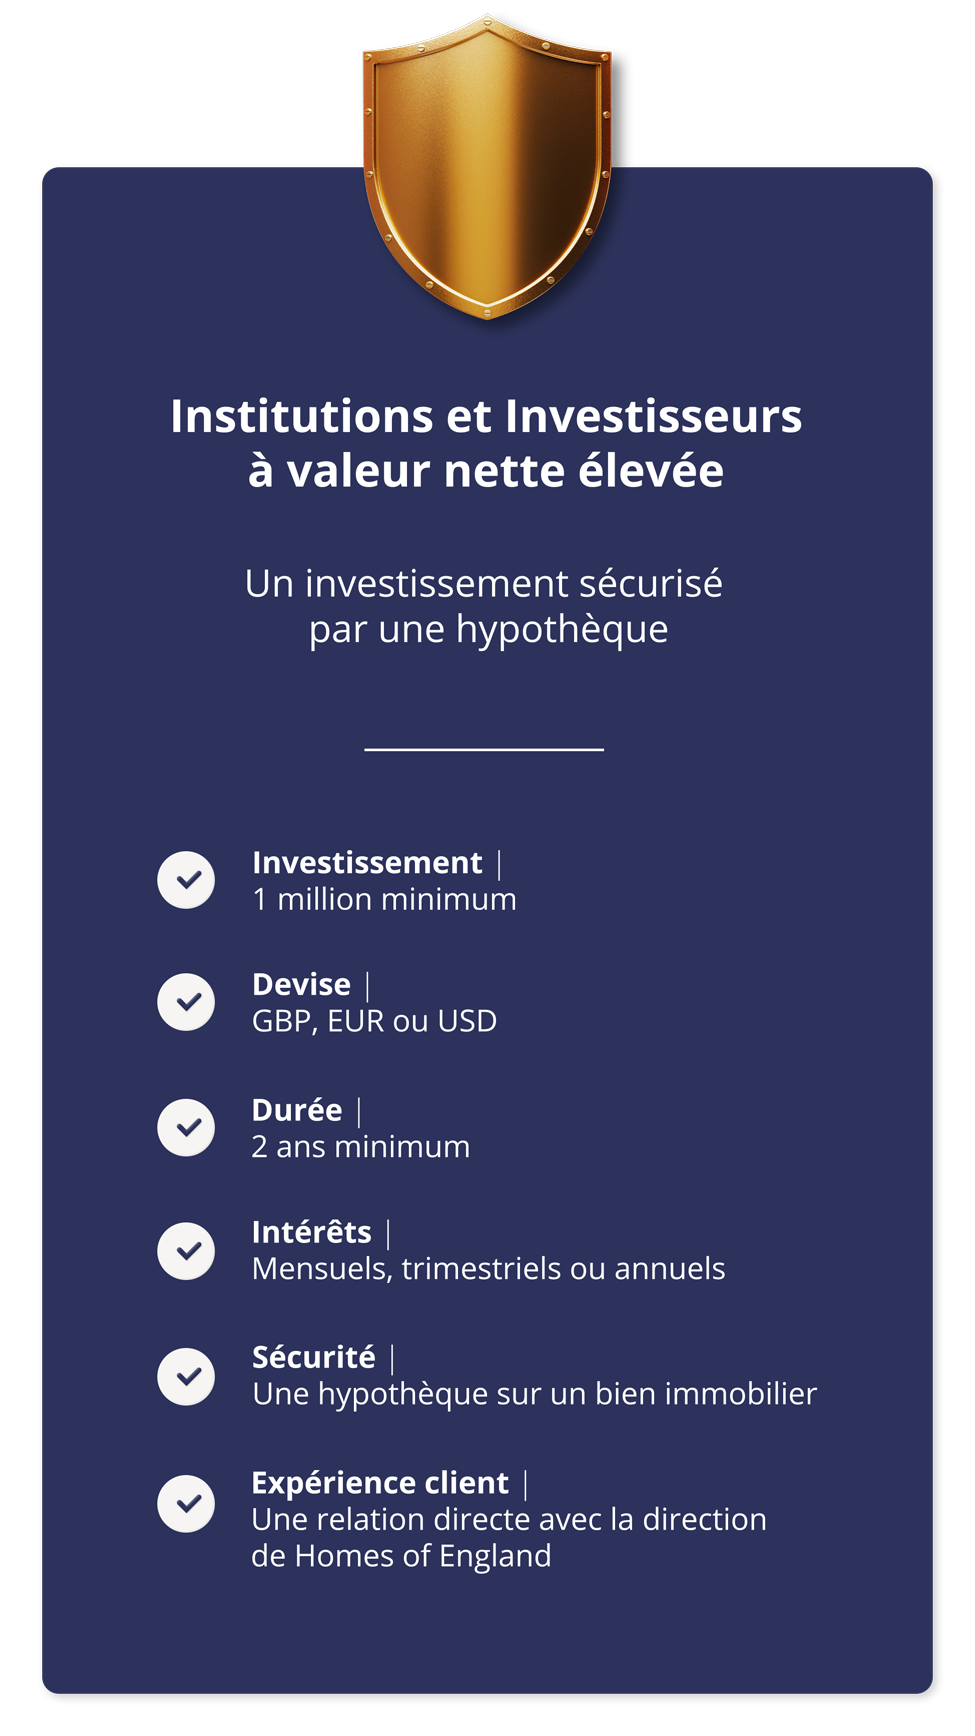 Institutions et Investisseurs à Valeur Nette Elevée